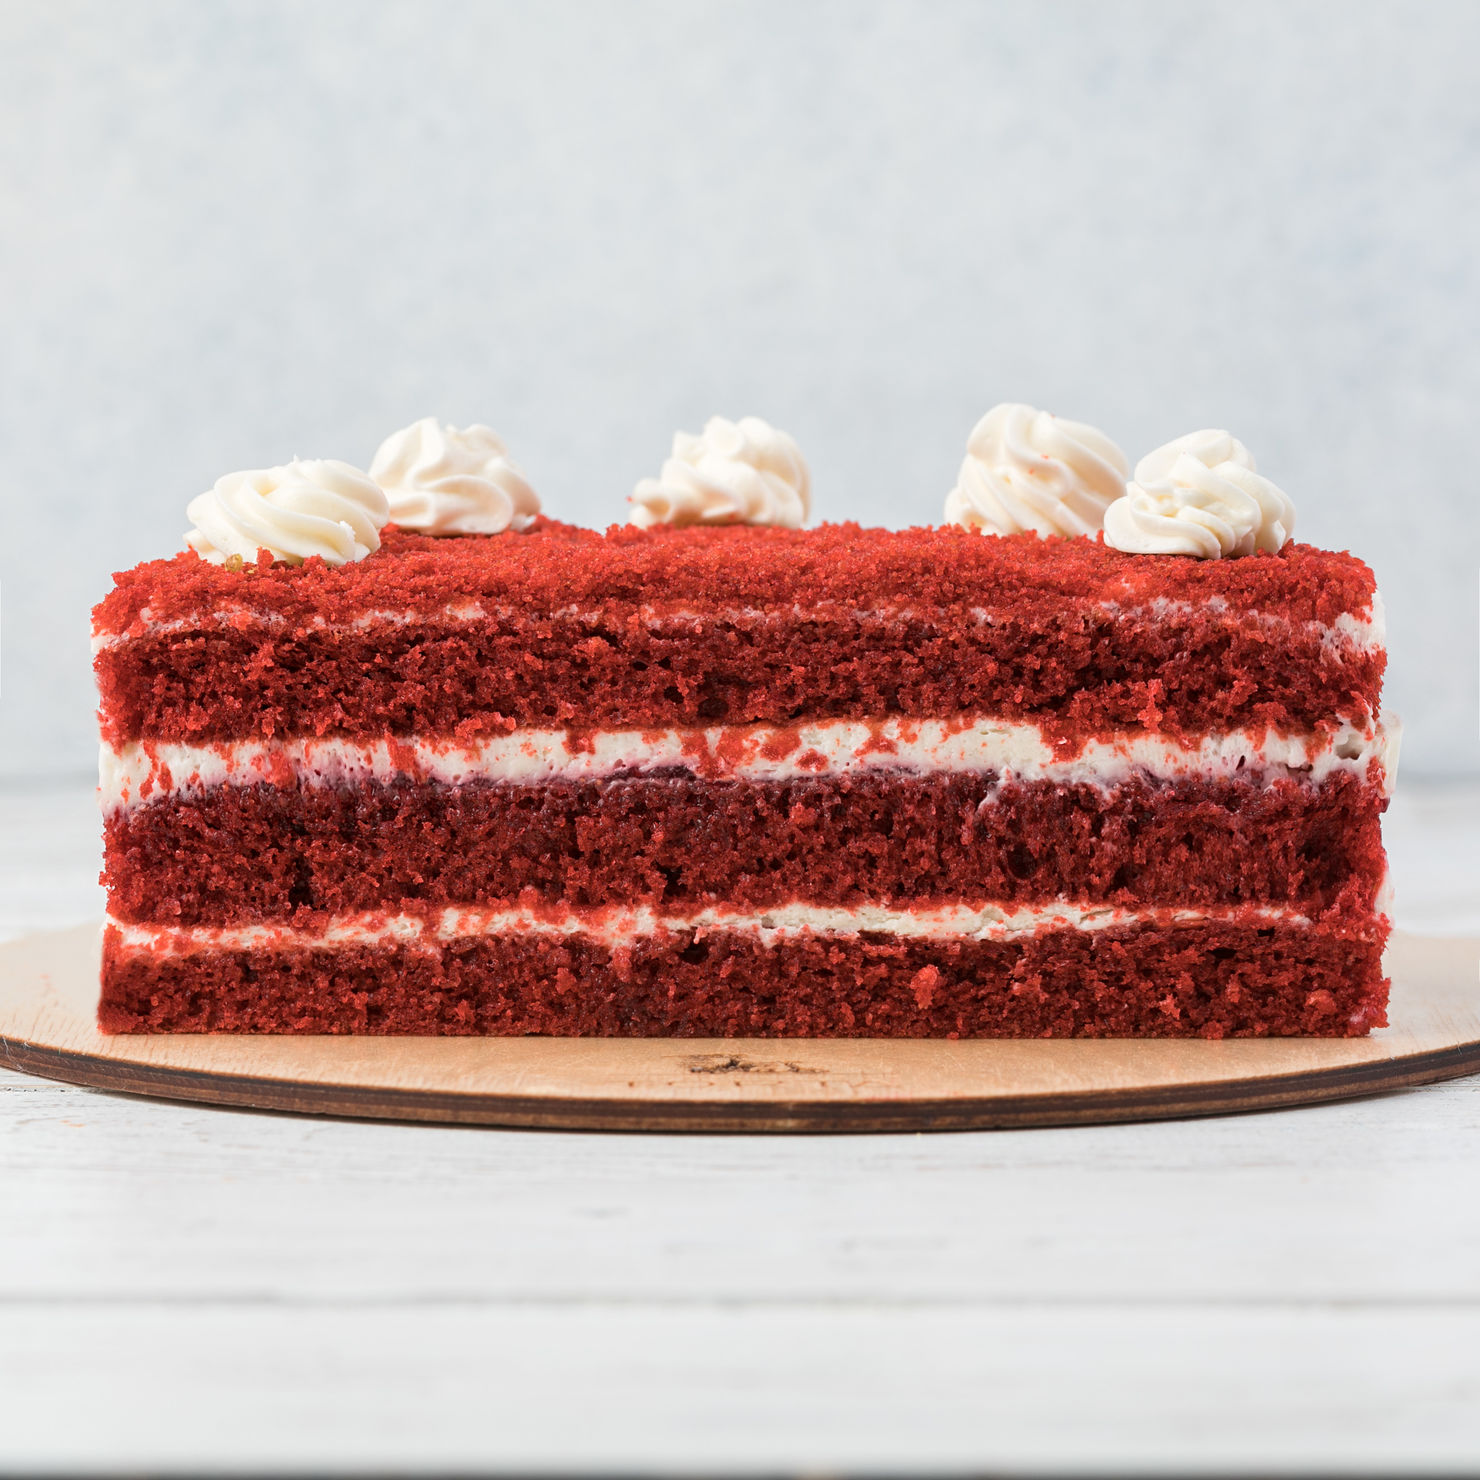 Торт красный бархат с кремом рецепт в домашних условиях фото пошагово